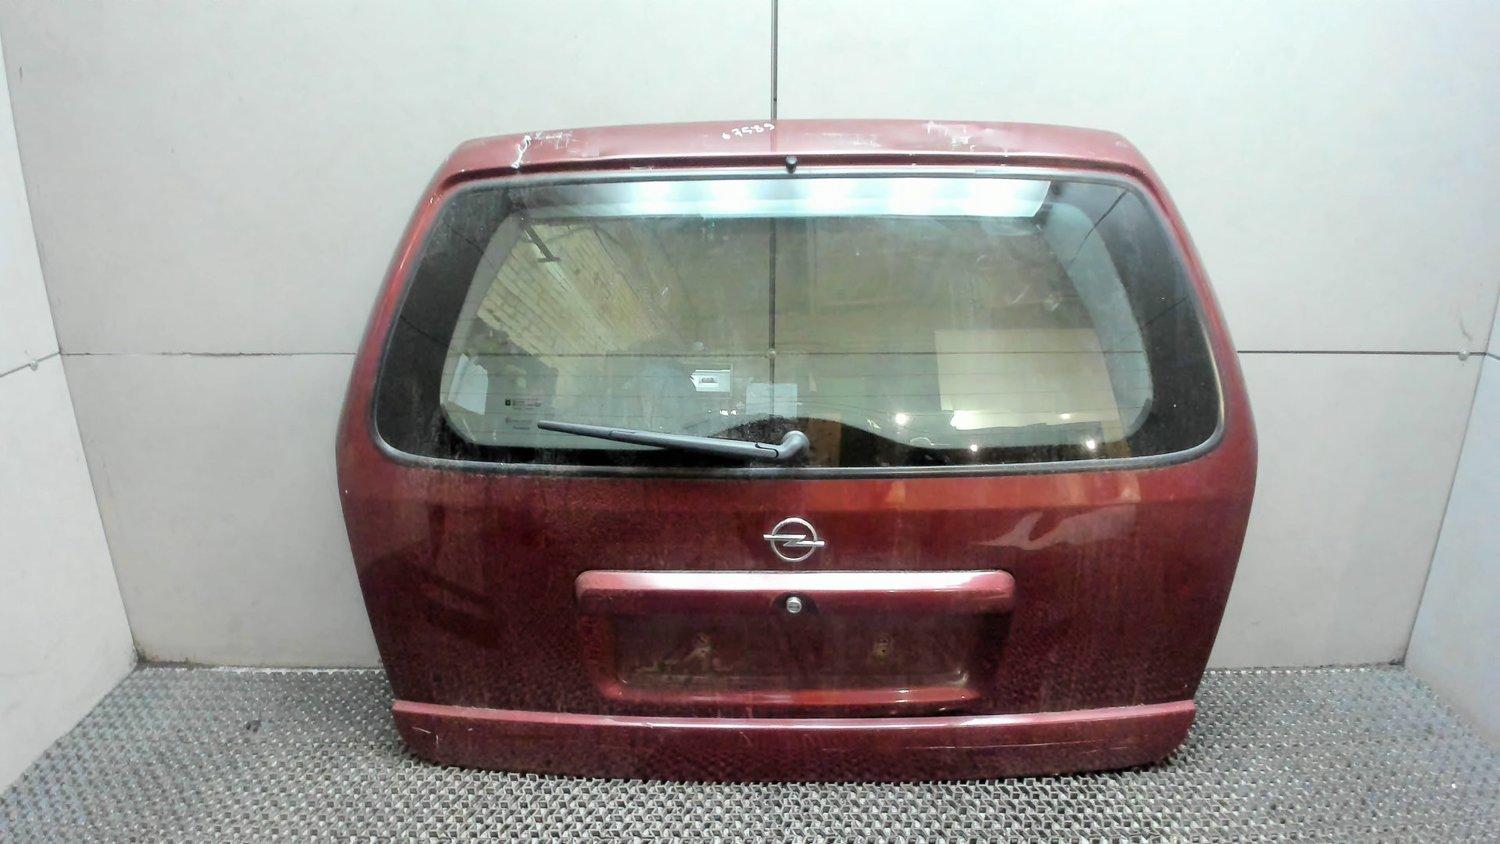 Дверь багажника зафира б. Крышка багажника универсал Опель Astra g. Опель клан 2007 крышка багажника. Дверь багажника Opel Astra g.